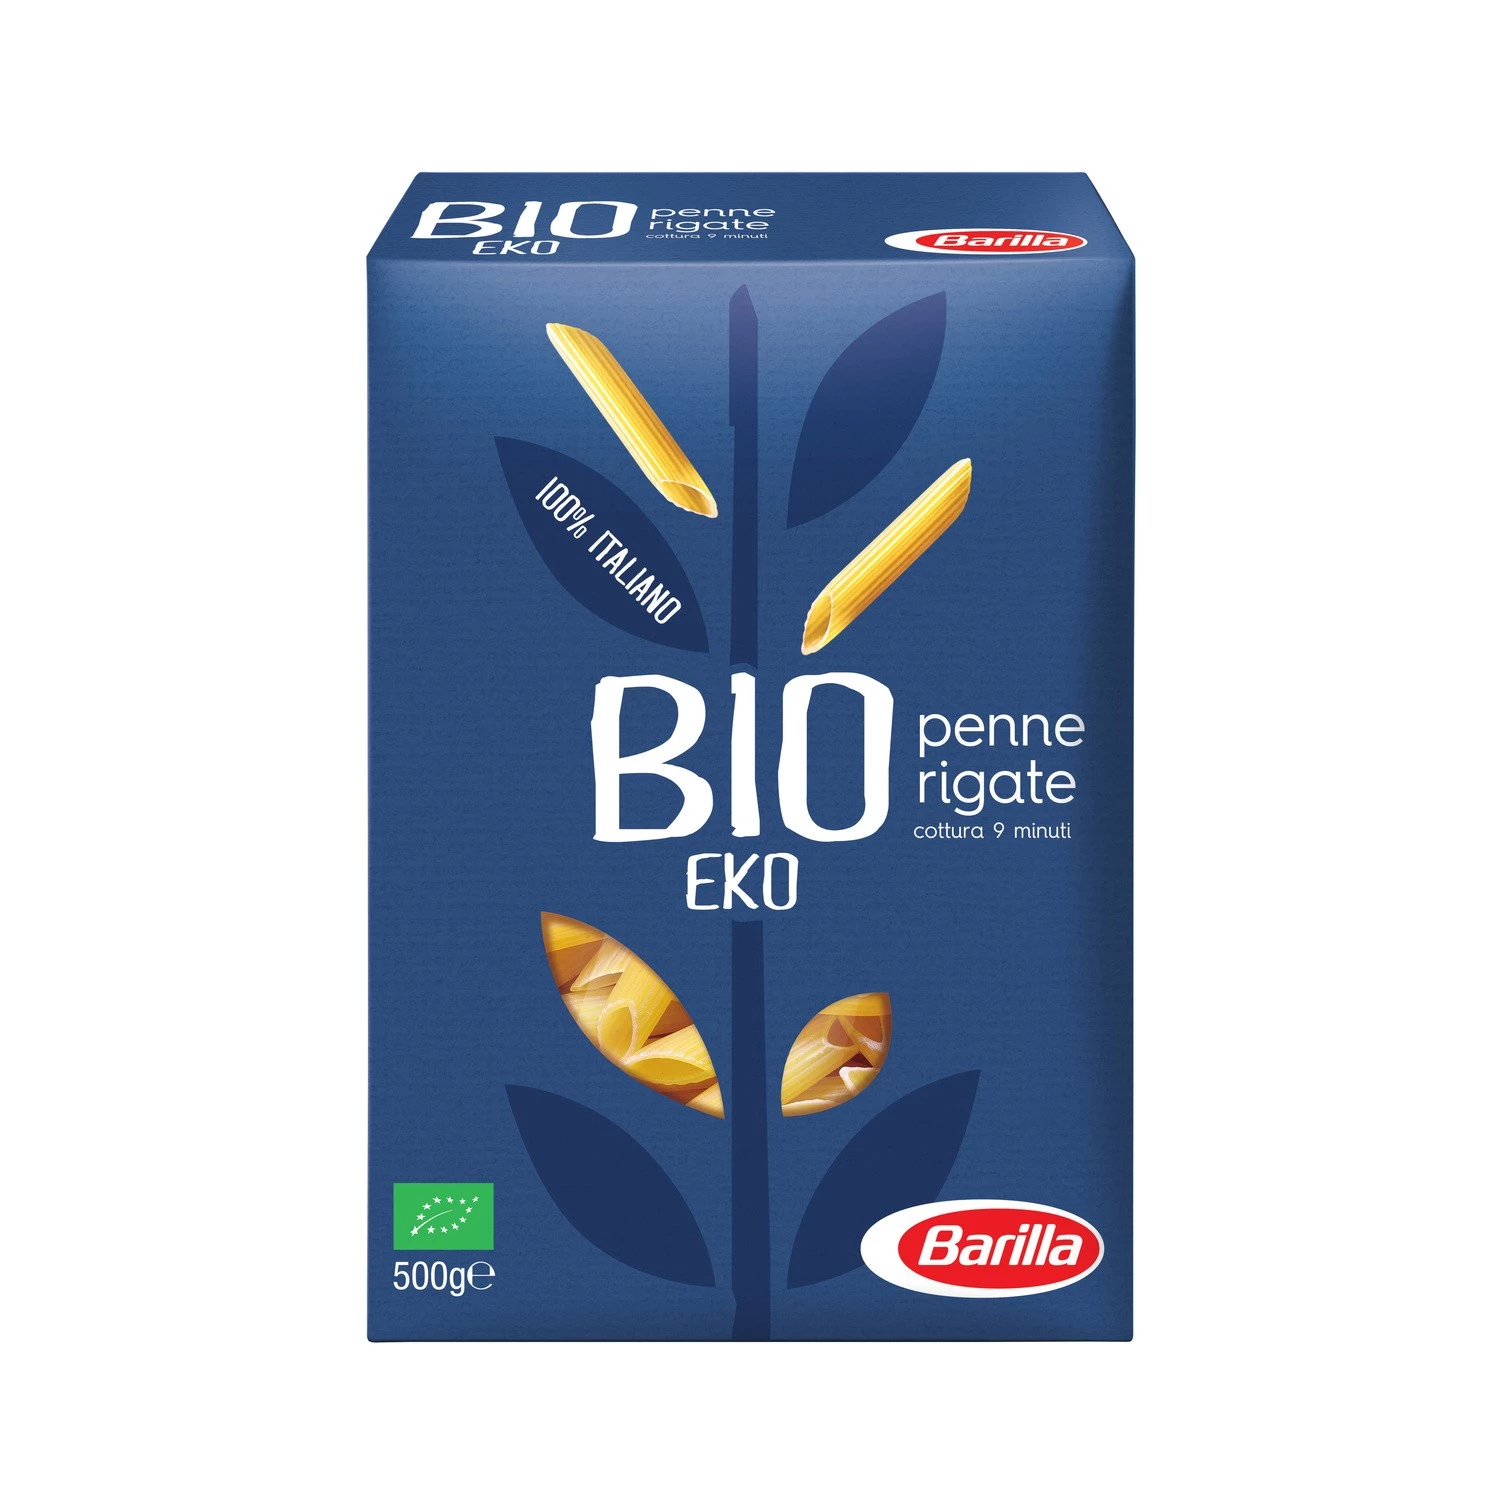 Organic penne rigate pasta 500g - BARILLA